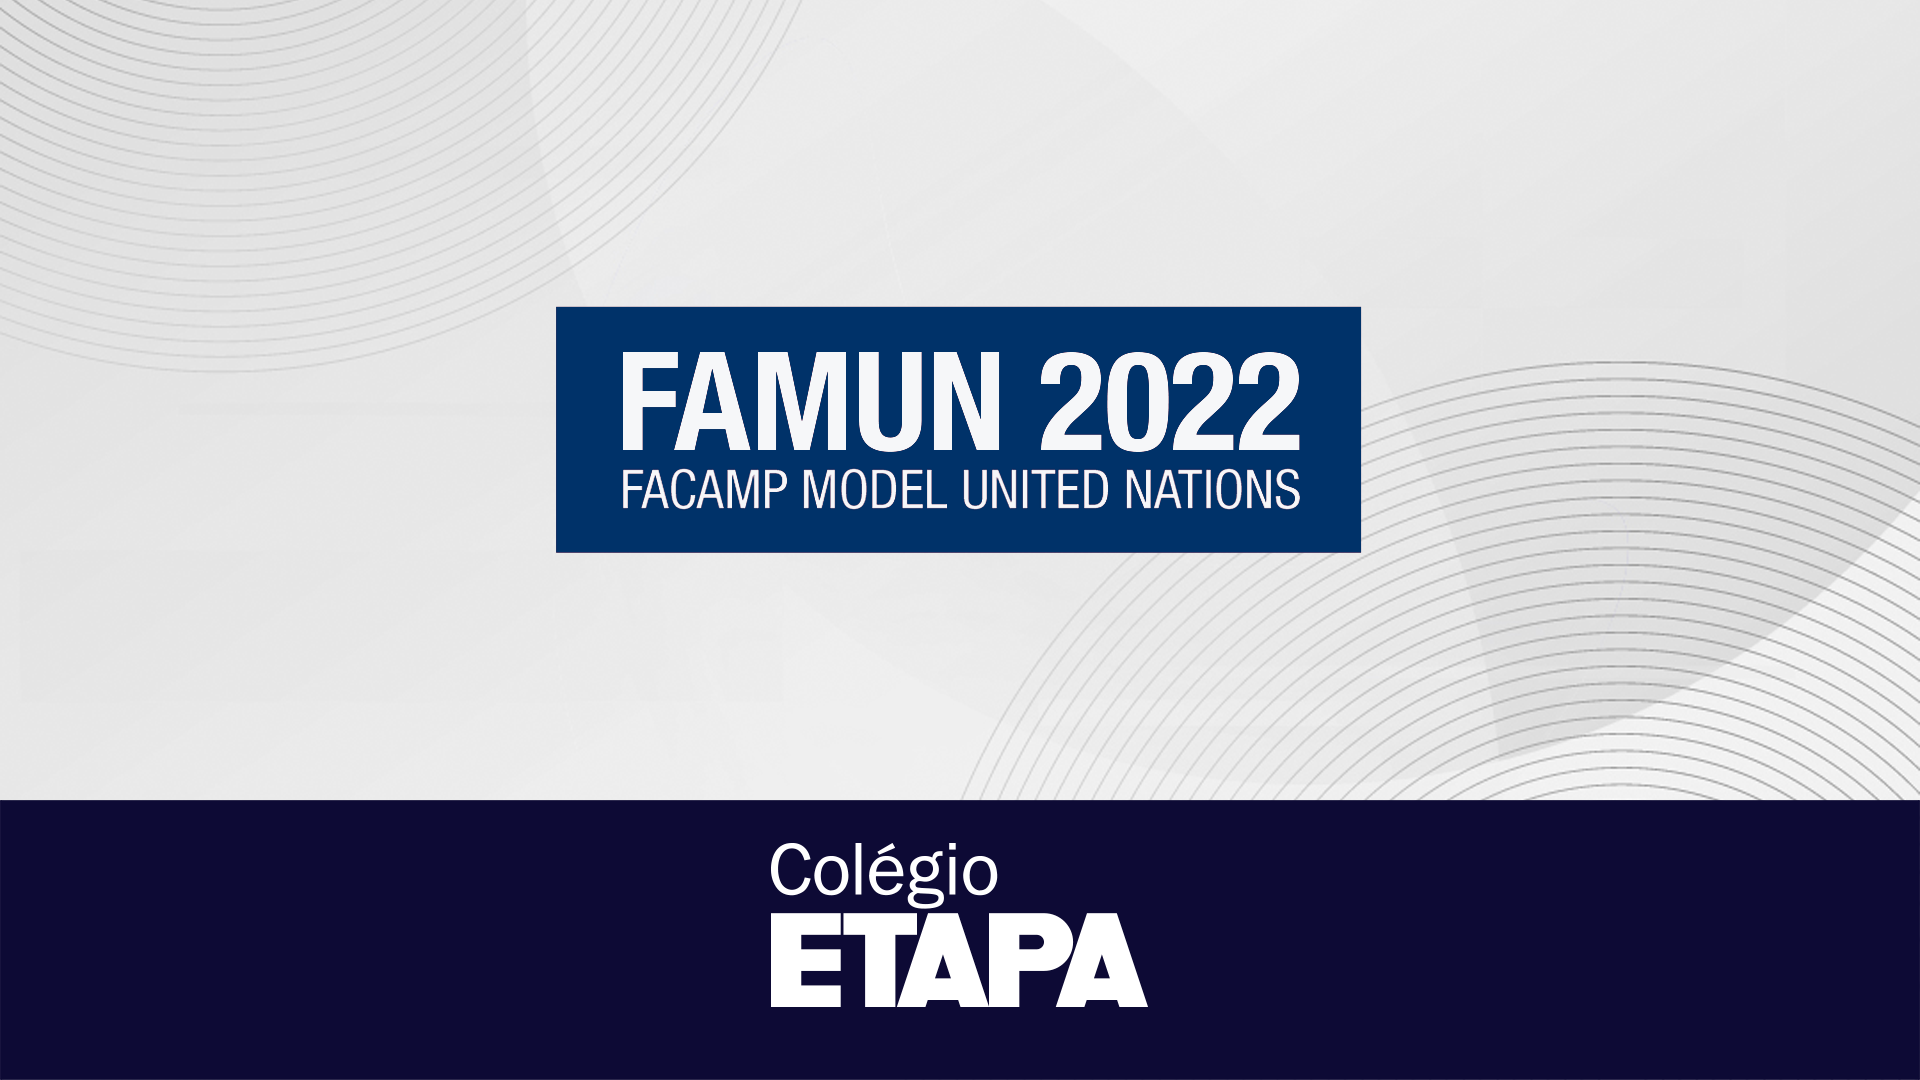 O Famun 2022 ocorreu entre os dias 3 e 5 de setembro.